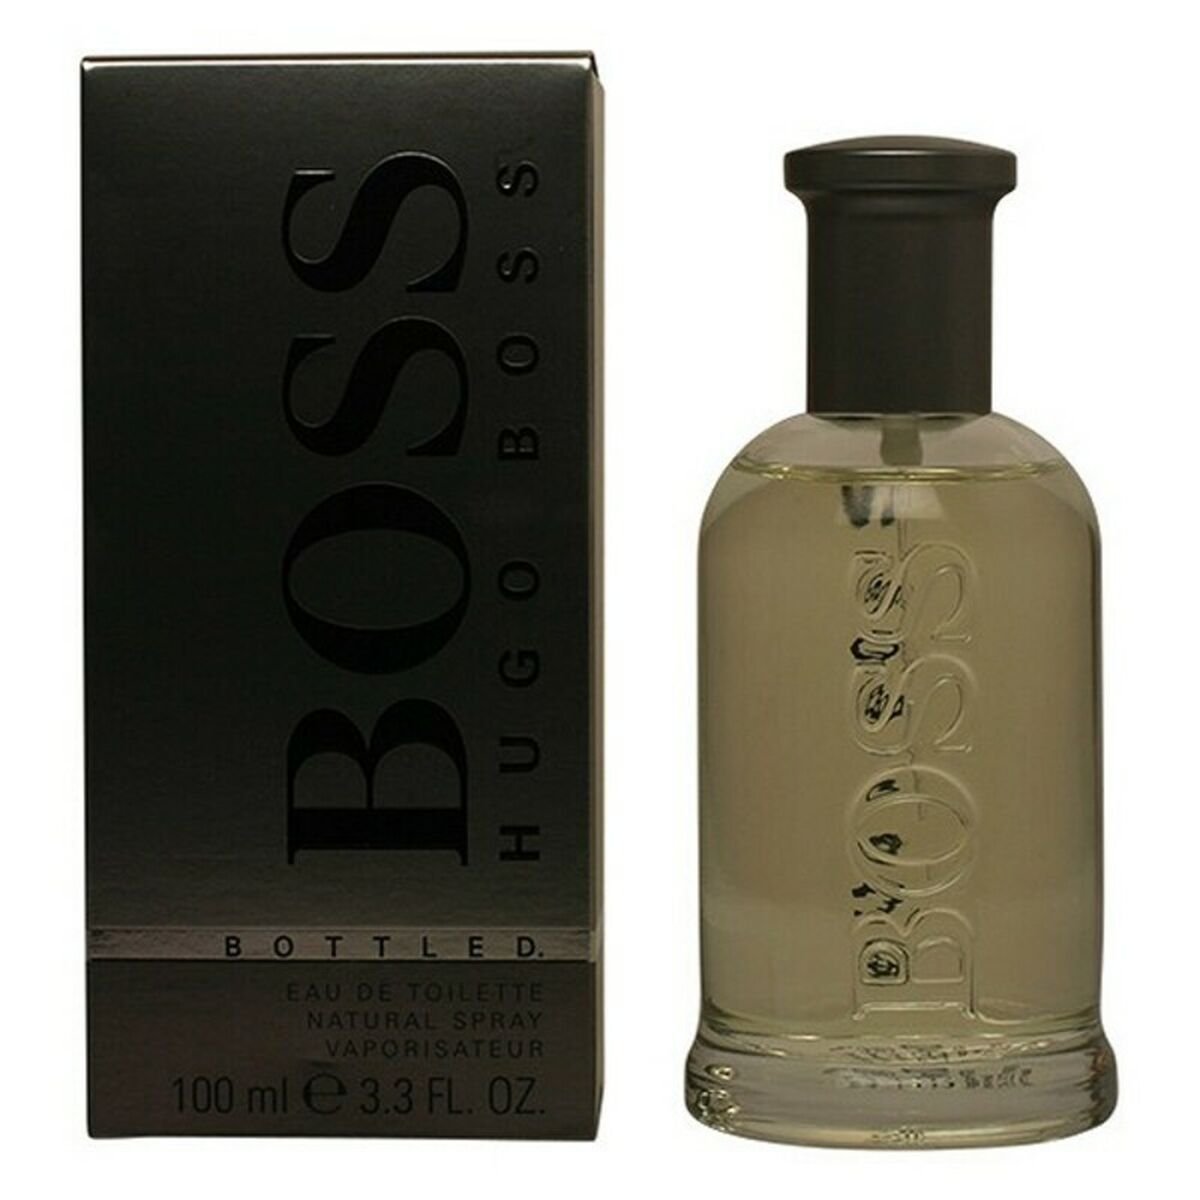 Men's Perfume Boss Bottled Hugo Boss EDT